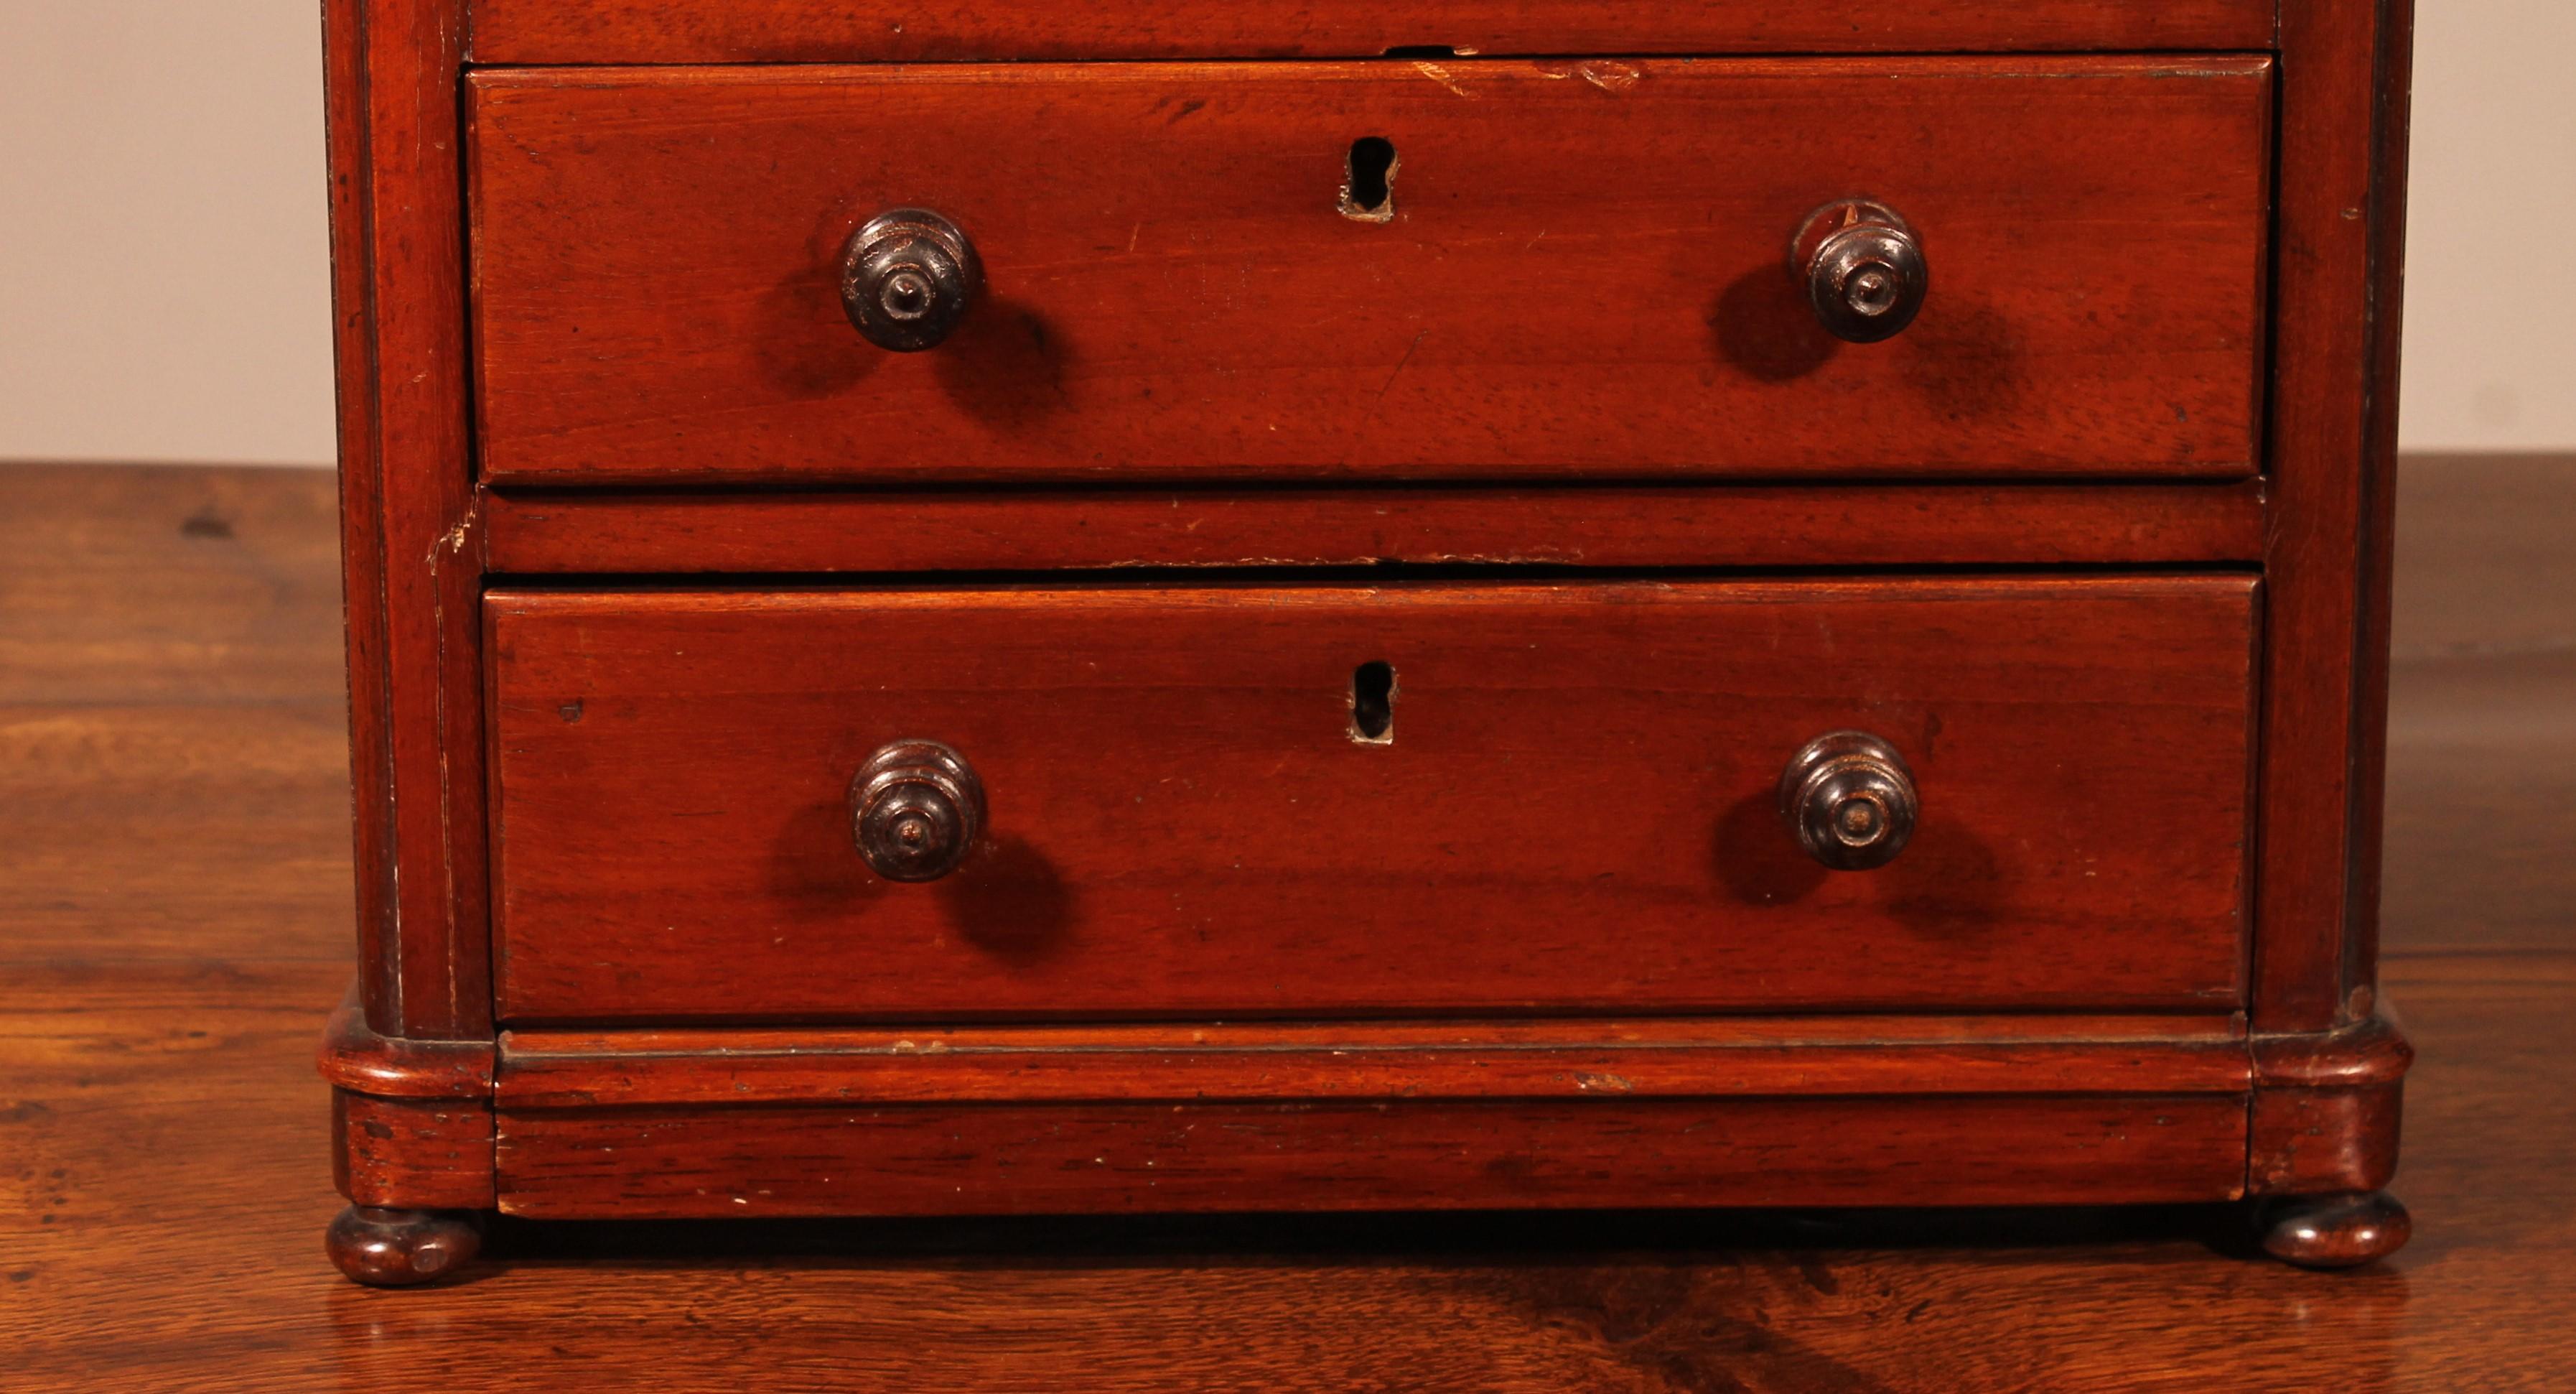 Ravissante petite commode miniature en acajou du 19ème siècle provenant d'Angleterre
commode avec un double tiroir dans le haut et le bas avec le socle intégré dans le tiroir ce qui est rare
en très bon état et belle patine